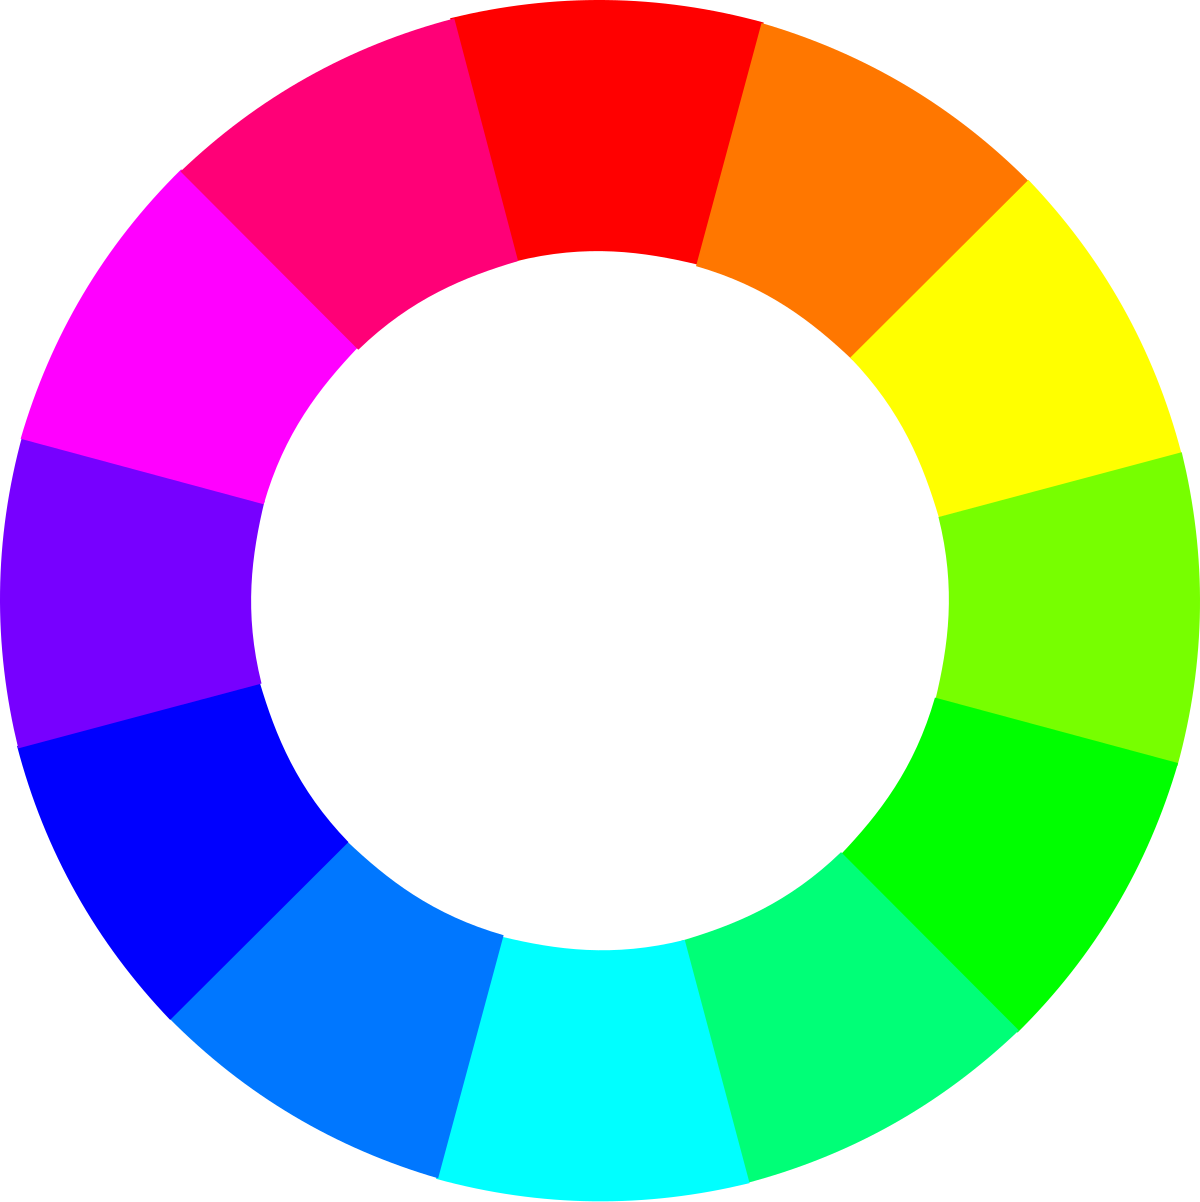 File:Circulo cromatico.svg - Wikimedia Commons